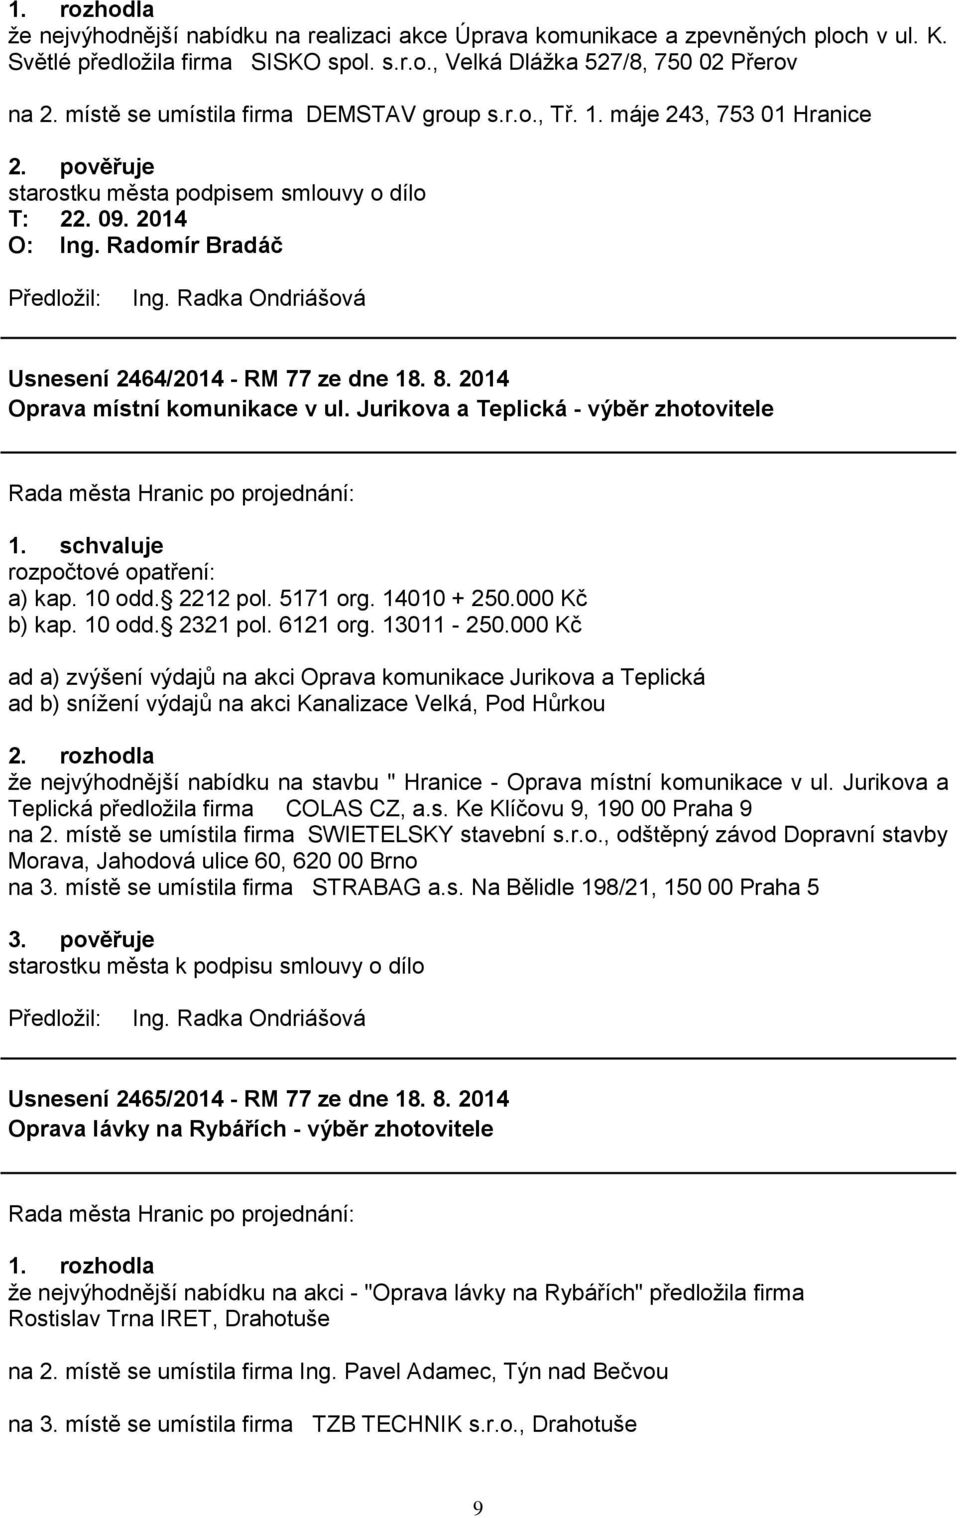 2014 Oprava místní komunikace v ul. Jurikova a Teplická - výběr zhotovitele rozpočtové opatření: a) kap. 10 odd. 2212 pol. 5171 org. 14010 + 250.000 Kč b) kap. 10 odd. 2321 pol. 6121 org. 13011-250.